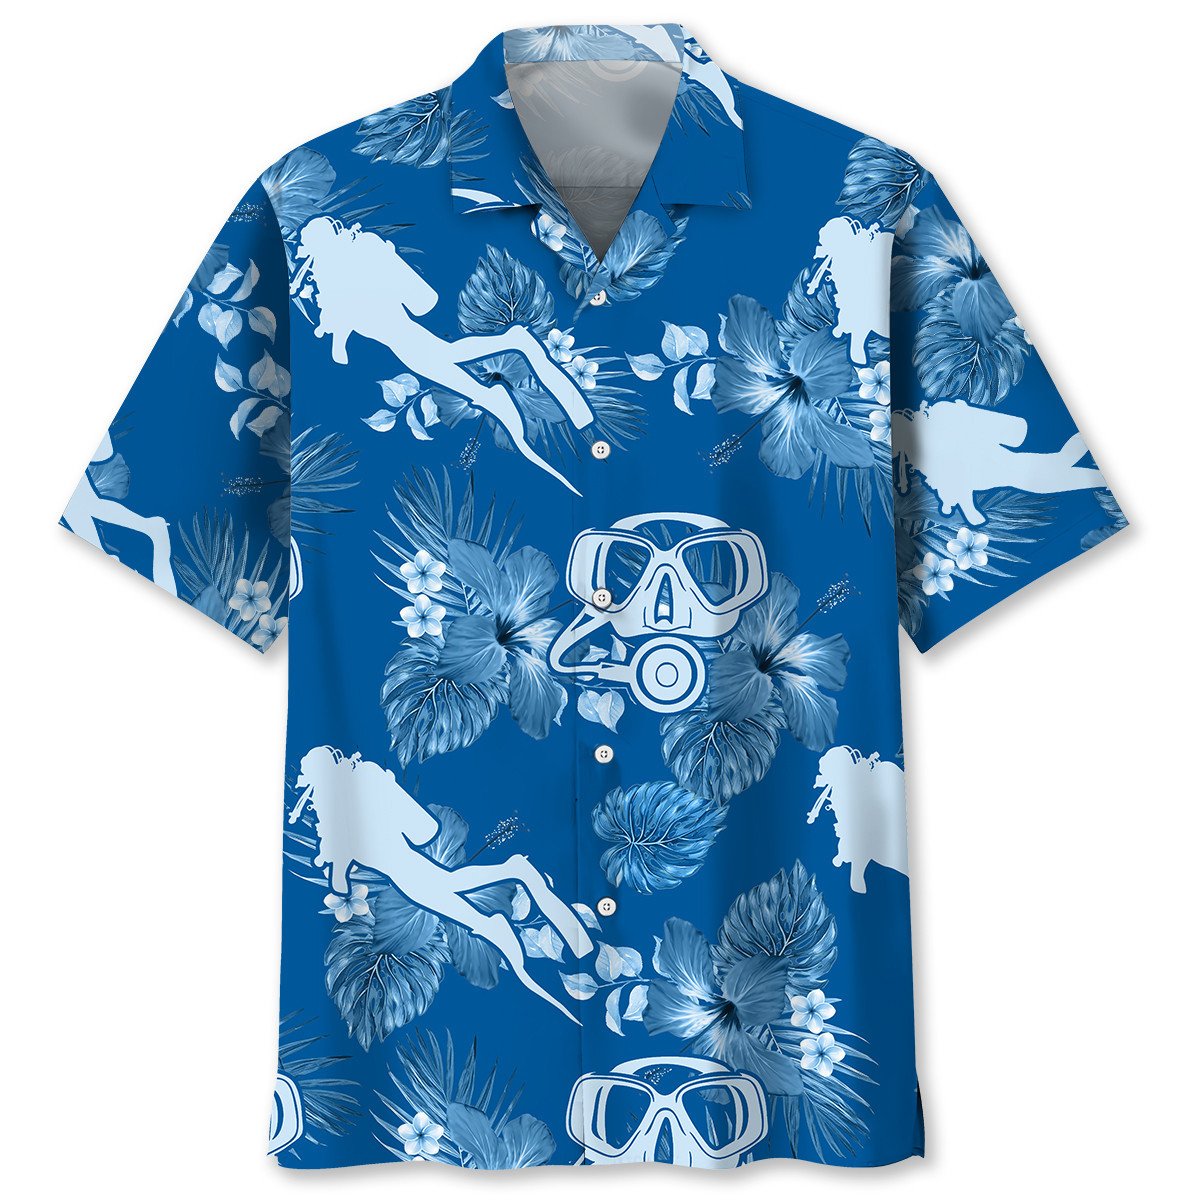 NEW Scuba Diving Blue Flowers Hawaiian Shirt